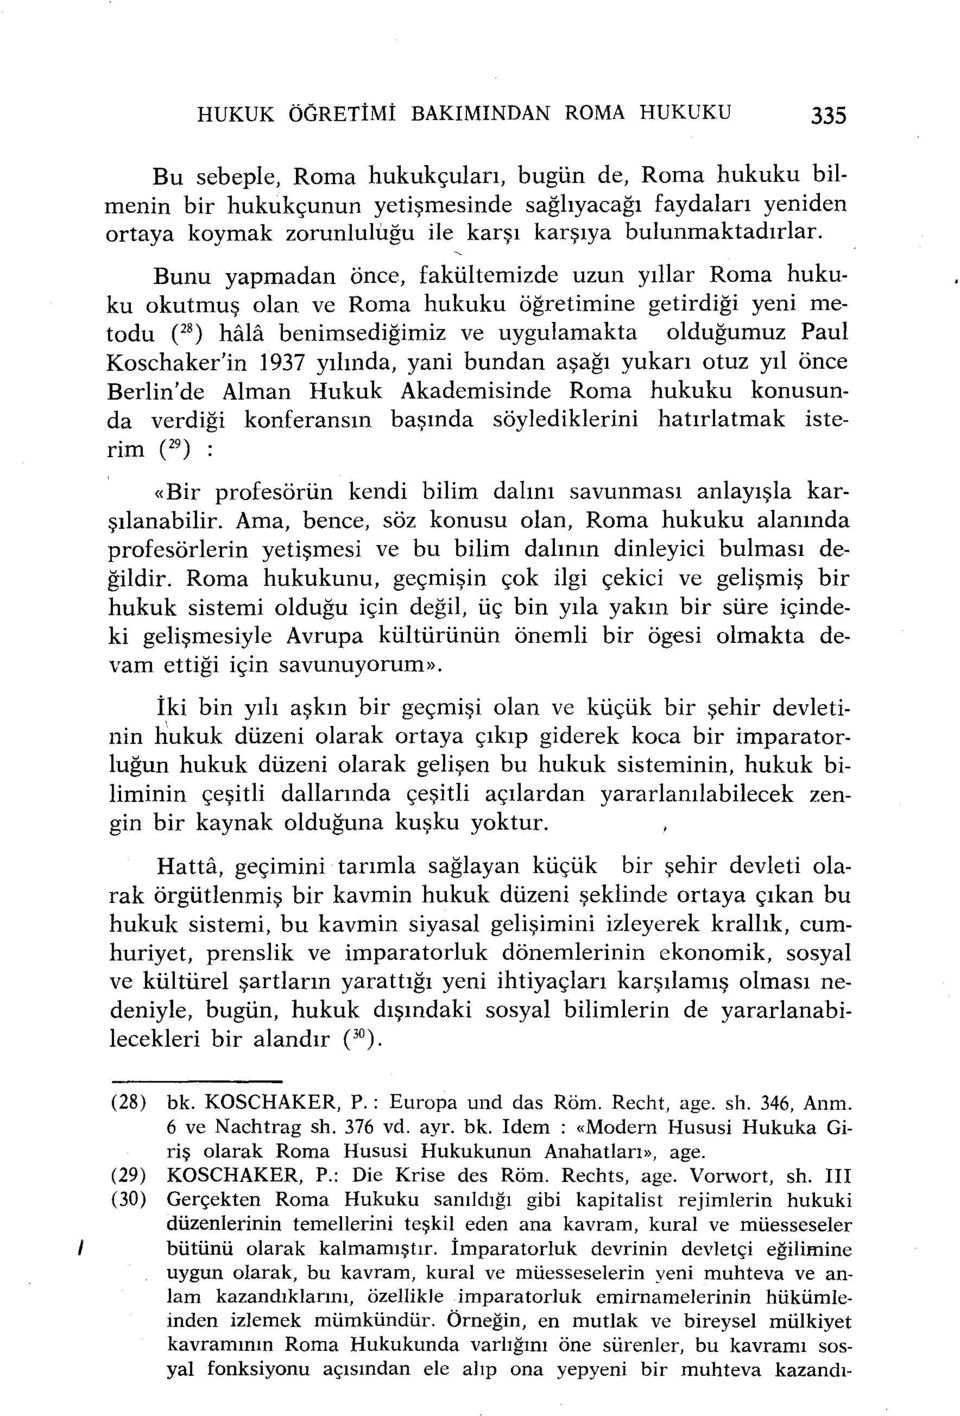 Bunu yapmadan önce, fakültemizde uzun yıllar Roma hukuku okutmuş olan ve Roma hukuku öğretimine getirdiği yeni metodu ( 28 ) hâlâ benimsediğimiz ve uygulamakta olduğumuz Paul Koschaker'in 1937